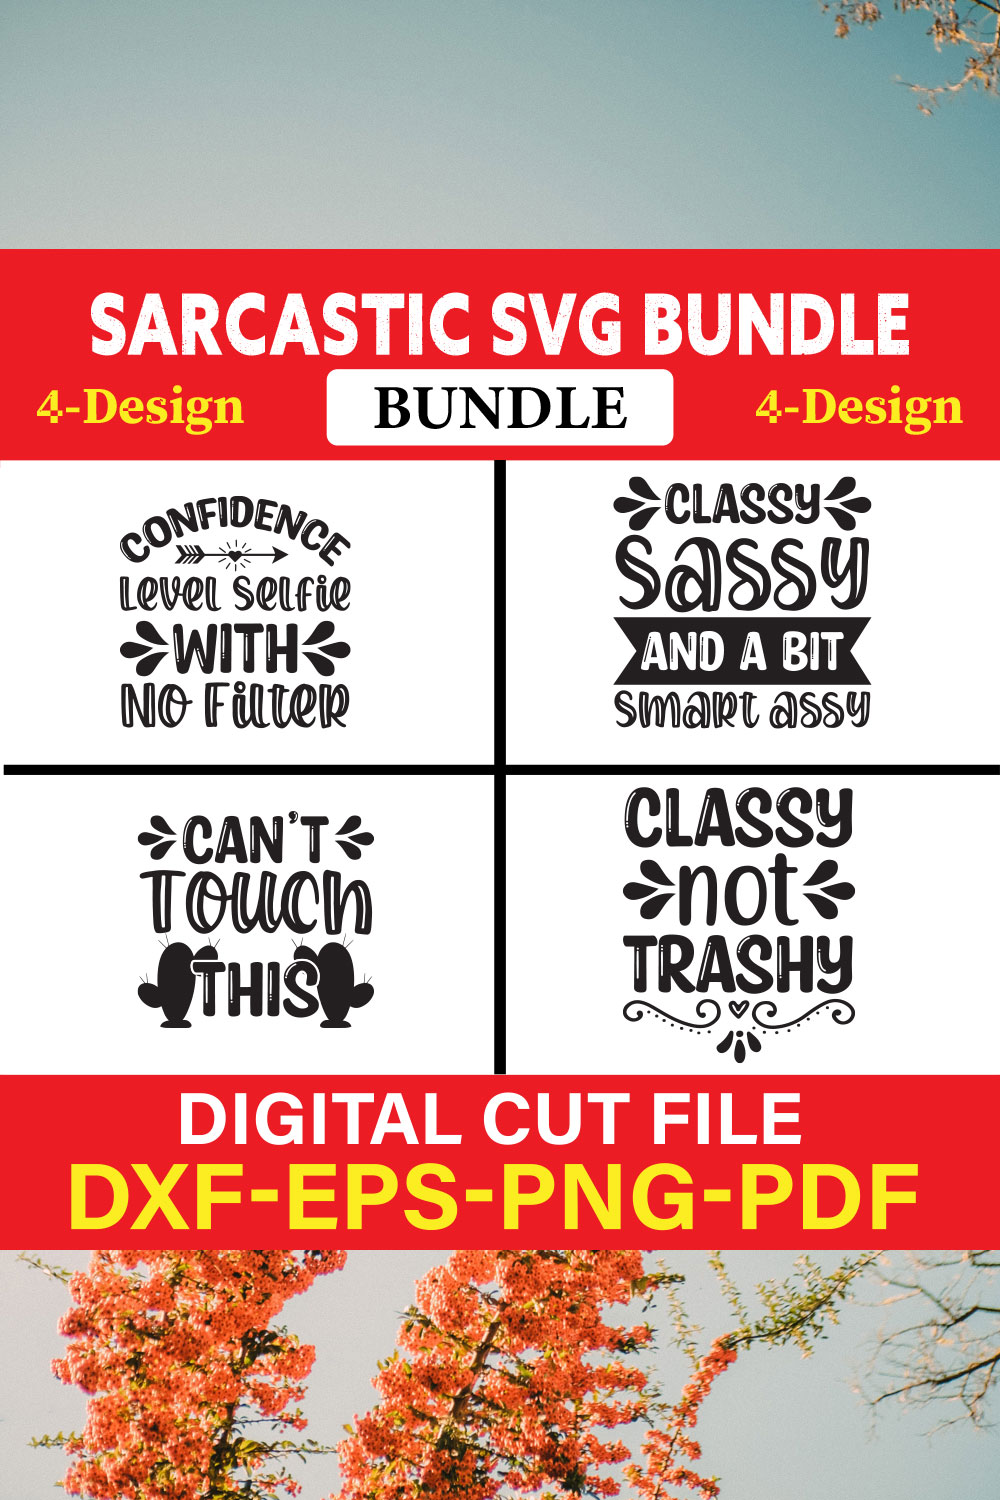 Sarcastic T-shirt Design Bundle Vol-2 pinterest preview image.